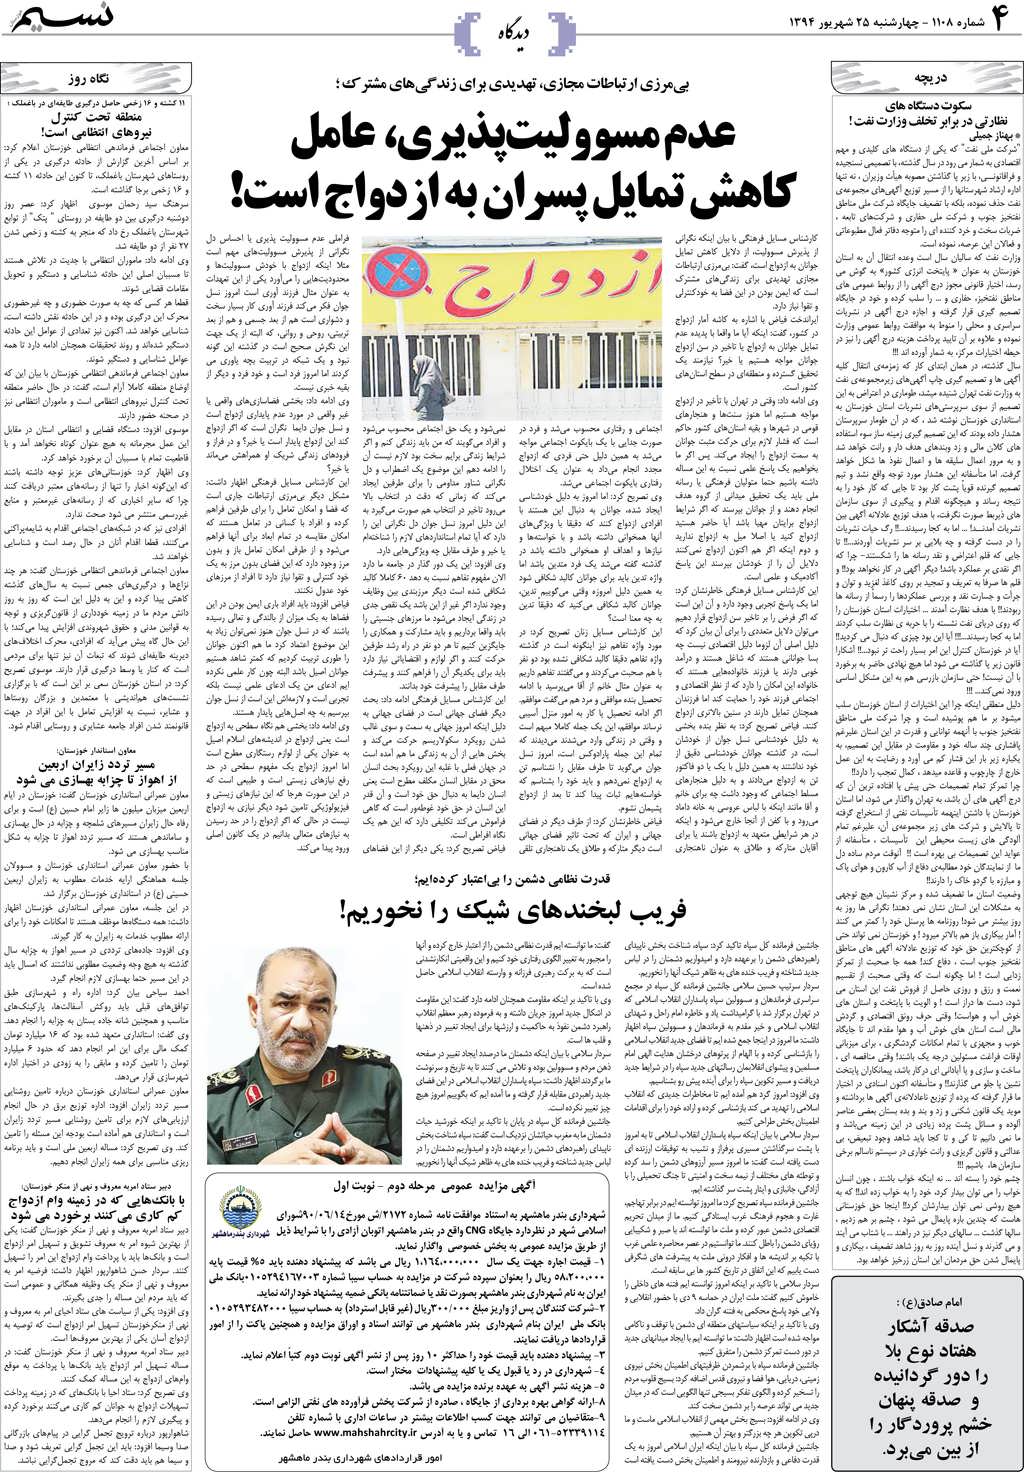 صفحه دیدگاه روزنامه نسیم شماره 1108